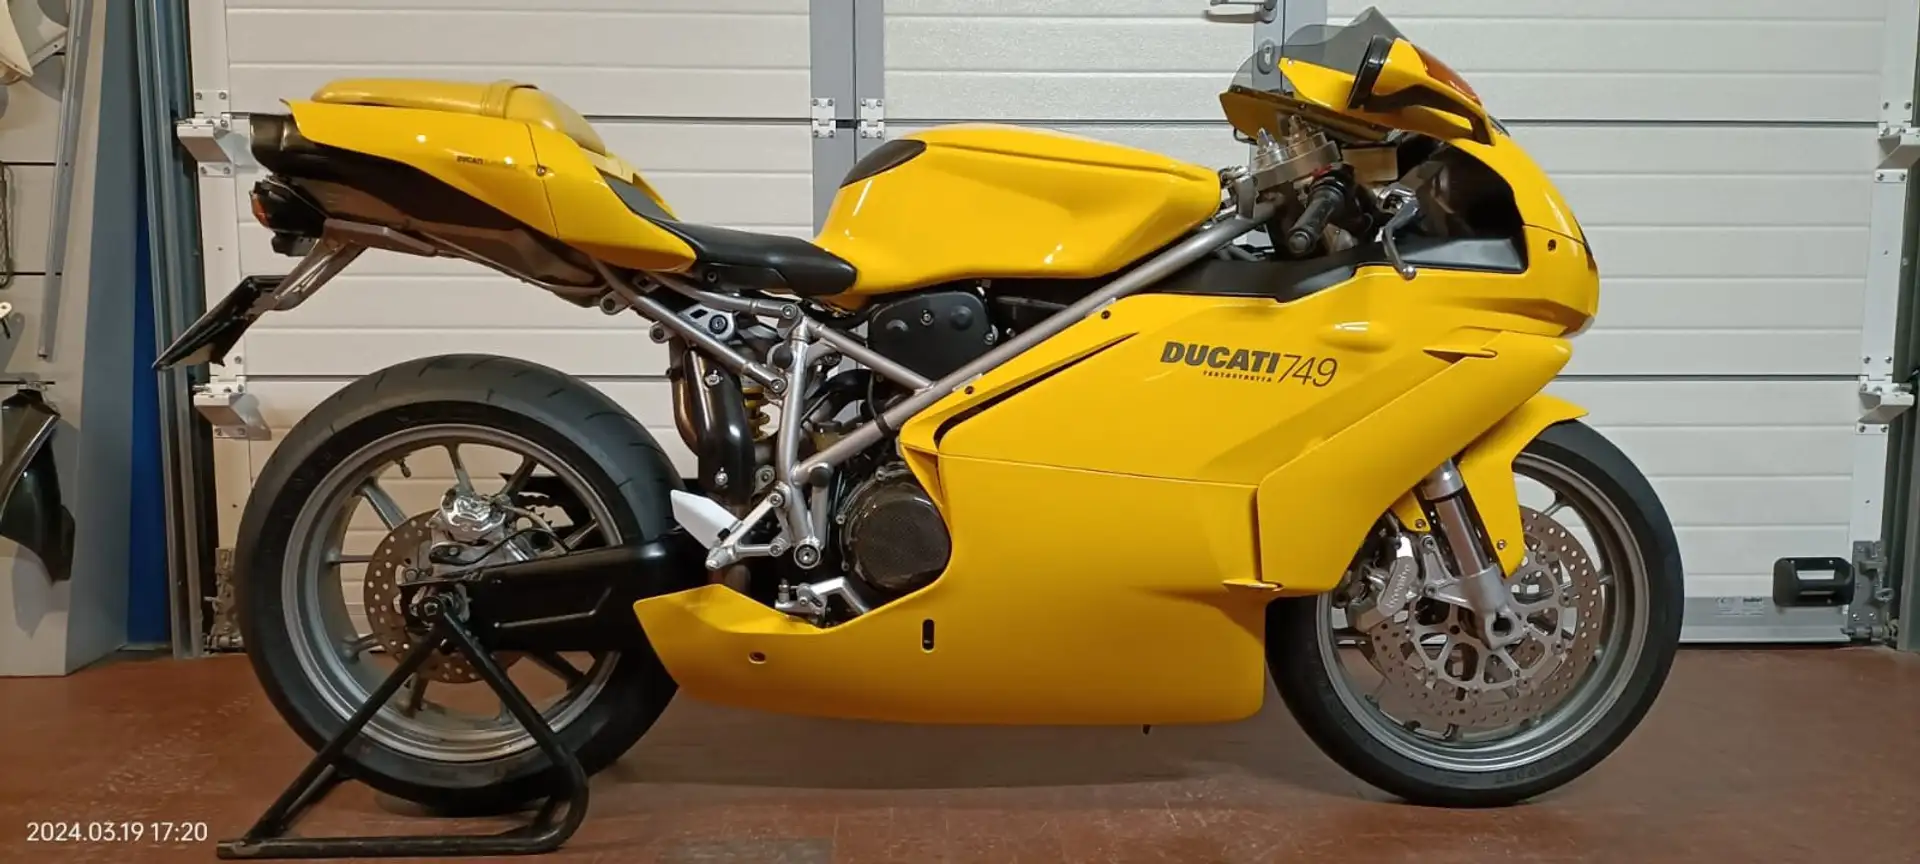 Ducati 749 Yellow - 1